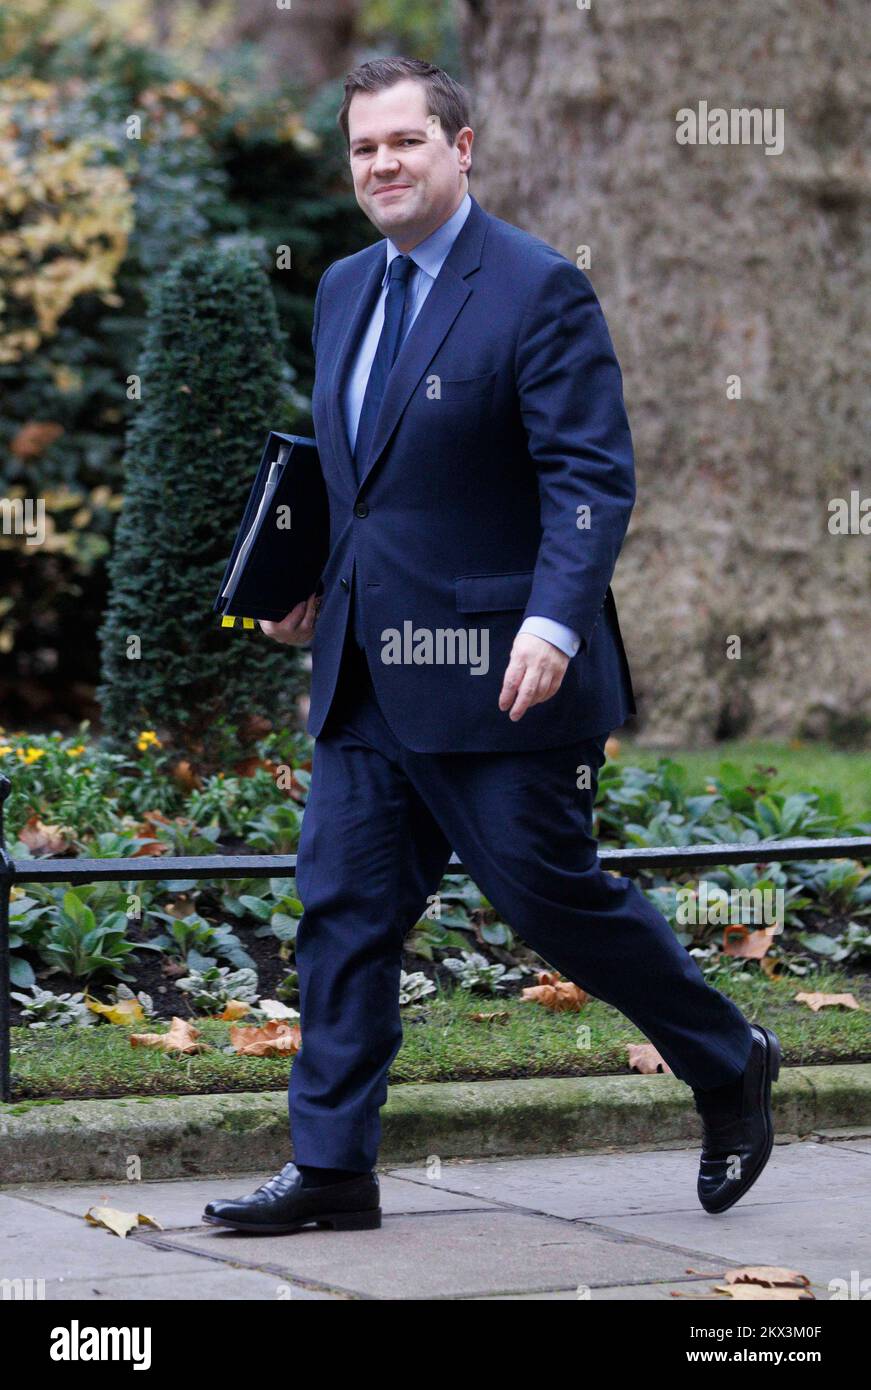 Robert Jenick, ministre d'État (ministre de l'Immigration), à Downing Street pour une réunion du Cabinet. Banque D'Images